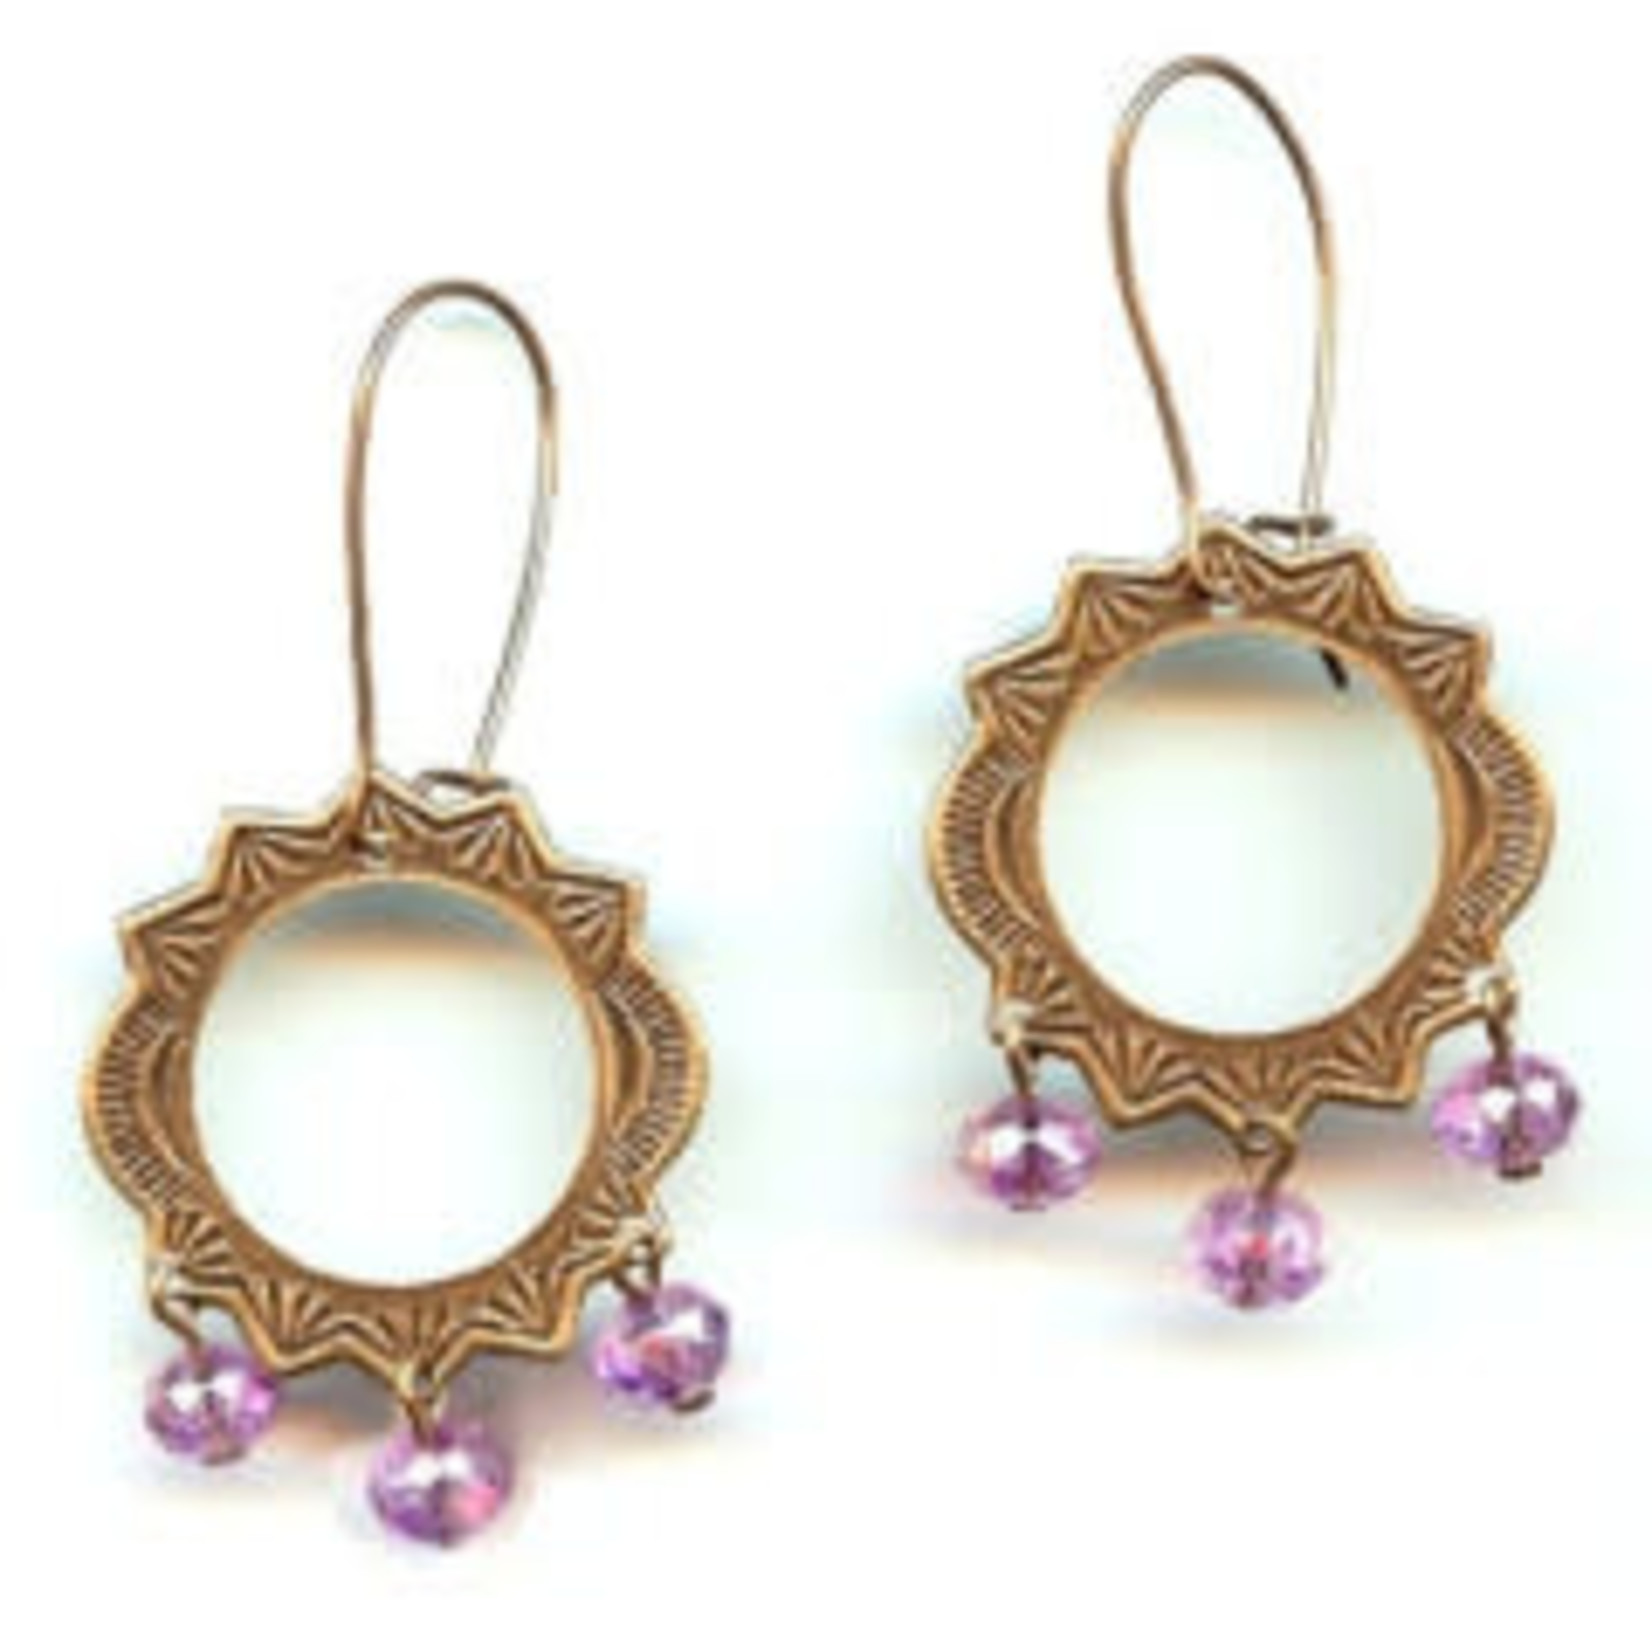 Lilac Sunburst Earrings - Ready to Wear